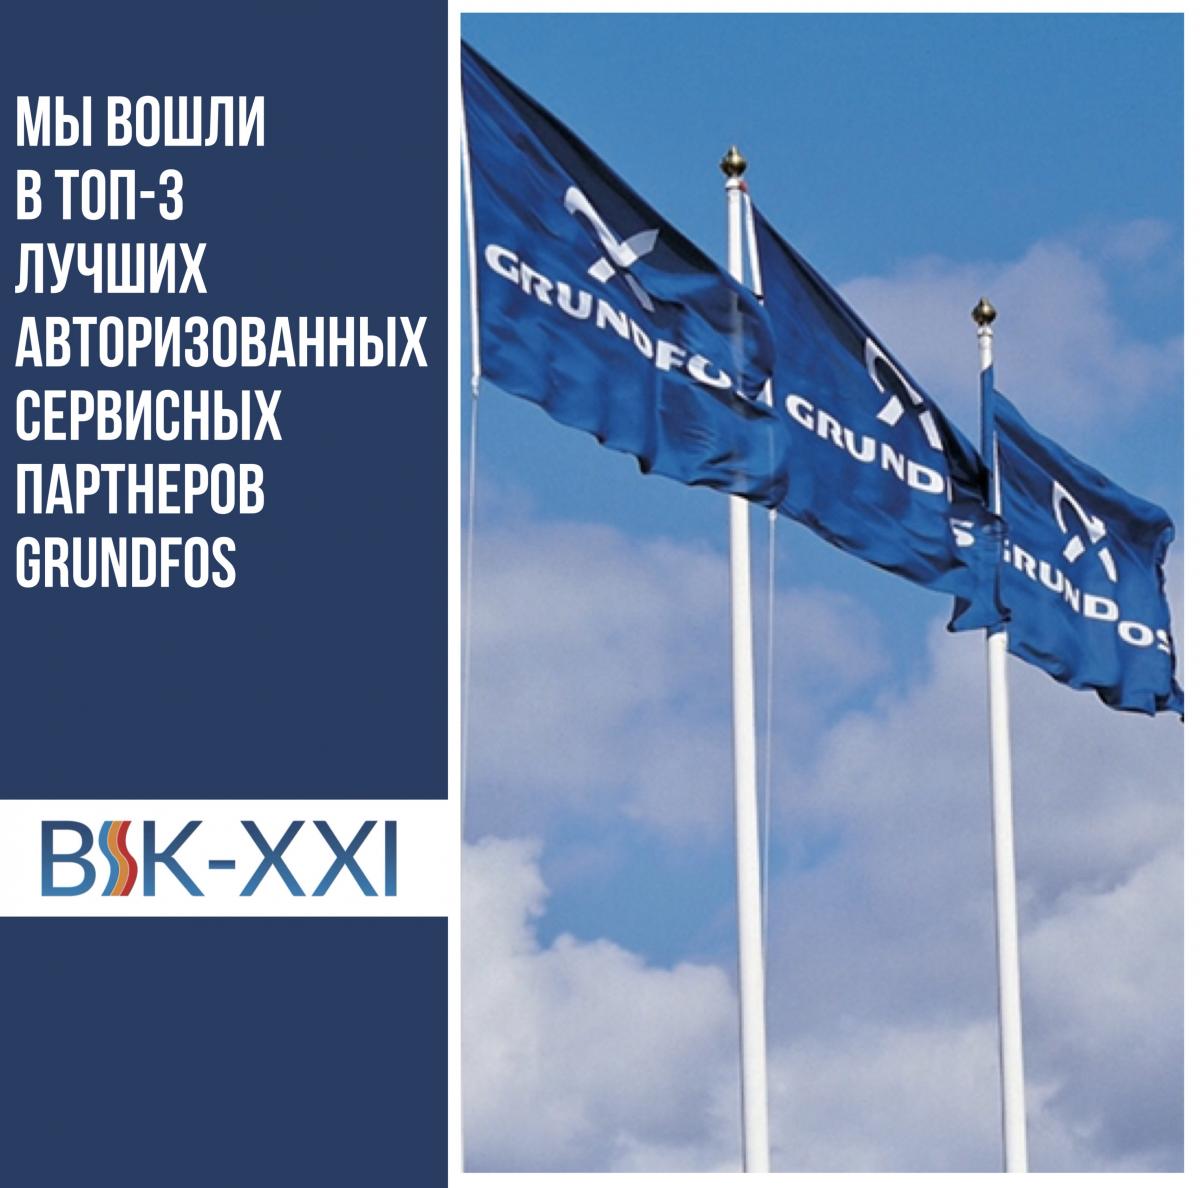 Сервісний центр «ВІК-XXI» увійшов в топ-3 найкращих авторизованих сервісних партнерів Grundfos в Східній Європі